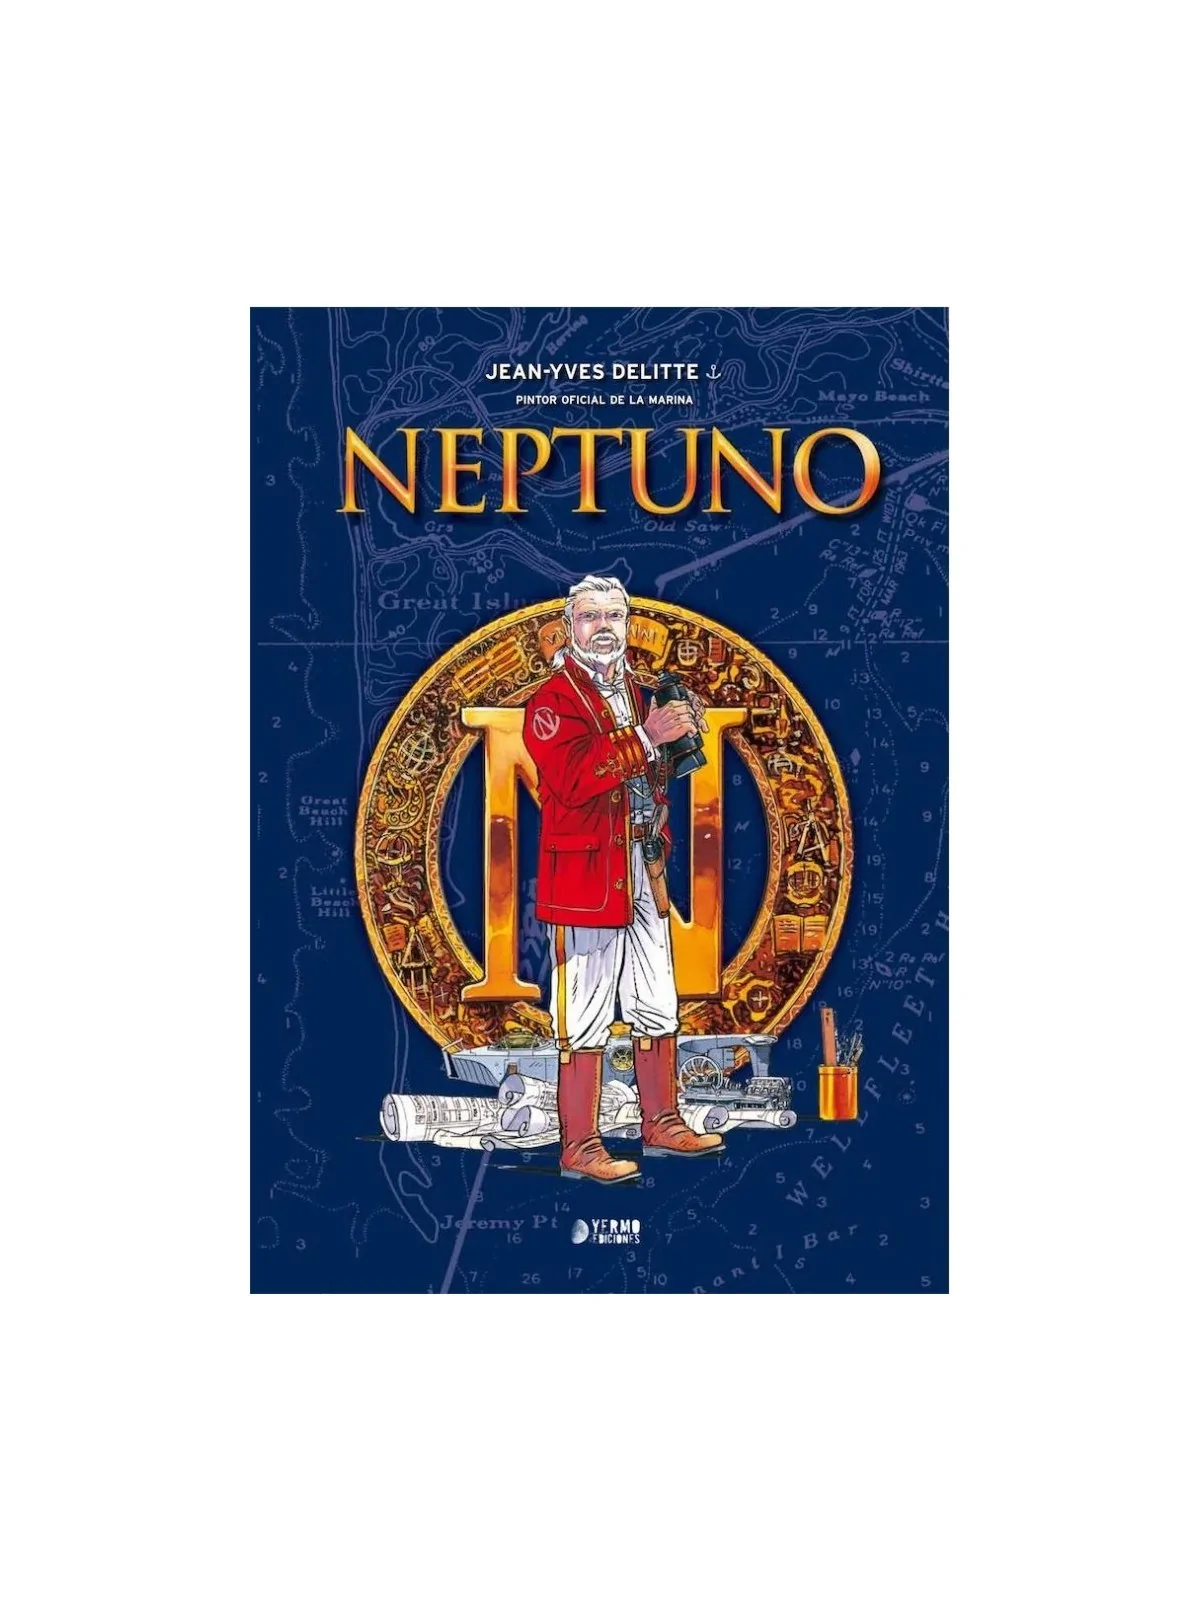 Comprar Neptuno. Obra Completa barato al mejor precio 39,90 € de Yermo